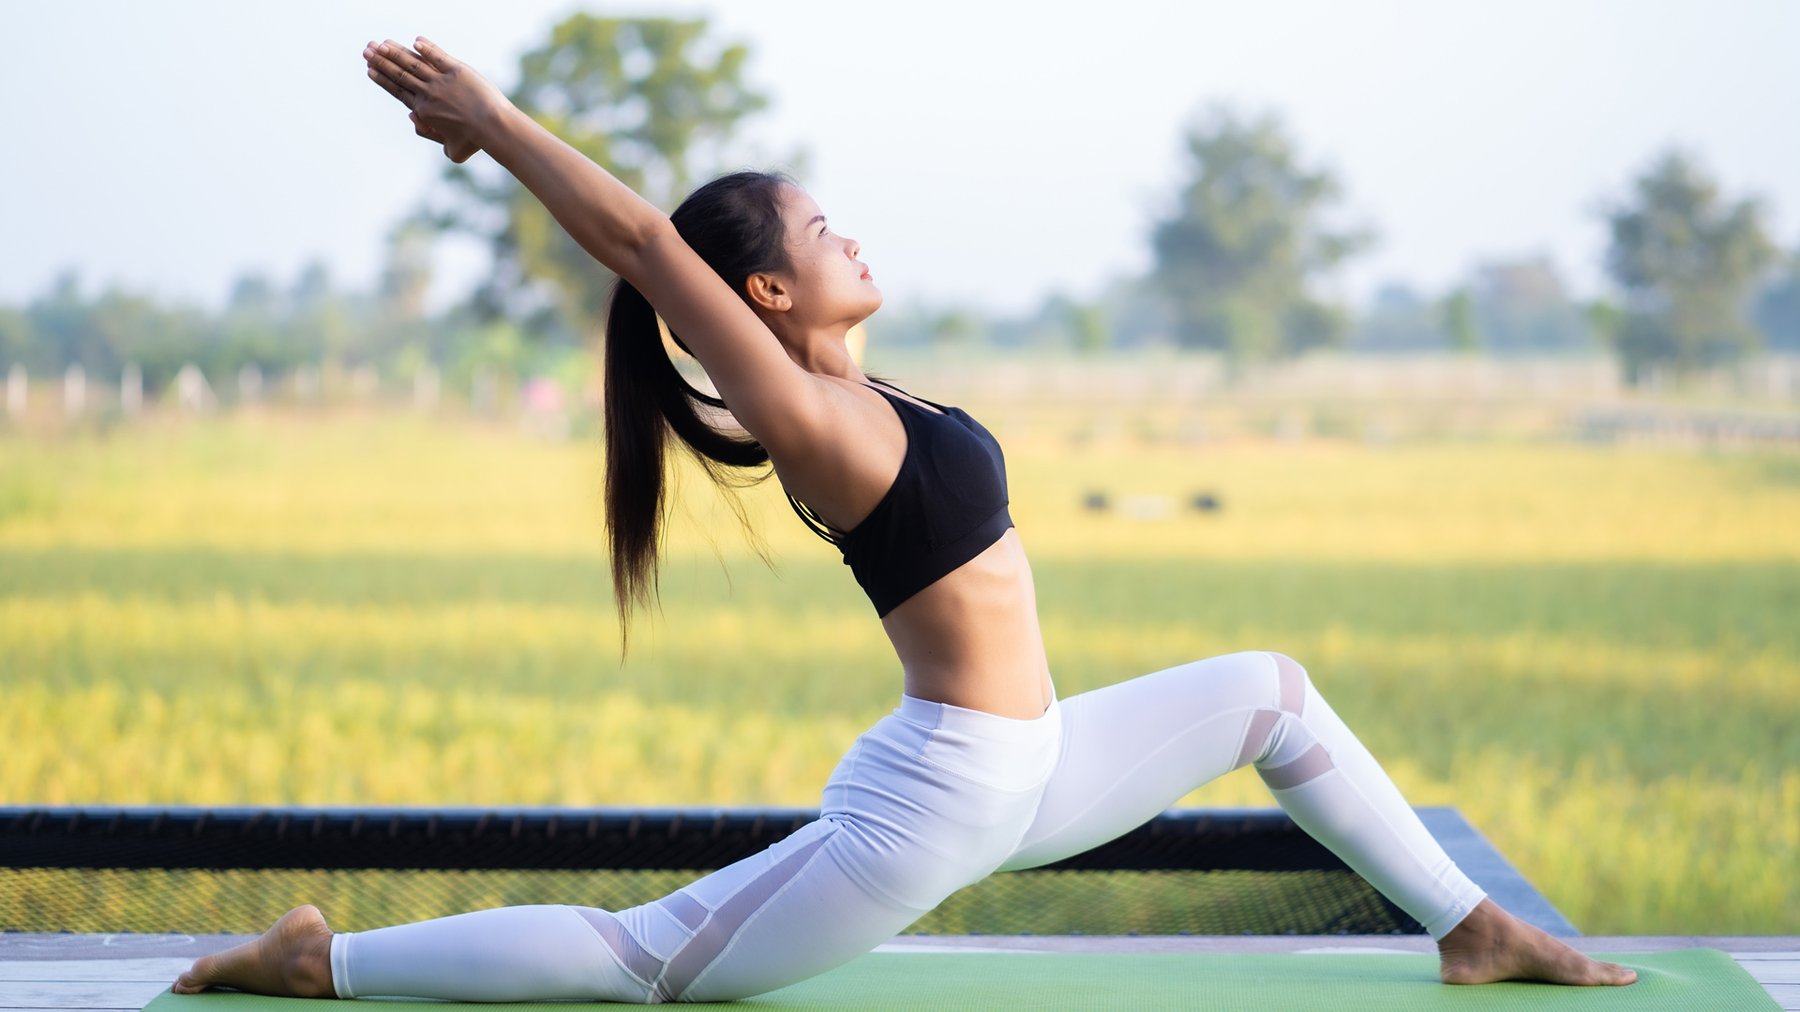 Hình ảnh yoga là một nguồn cảm hứng tuyệt vời cho những ai đam mê sự thư giãn và sức khỏe. Từ các tư thế cơ bản đến các tư thế khó khăn, các bài tập này sẽ giúp bạn tập trung, giải phóng stress và khám phá năng lượng tiềm năng của bản thân.